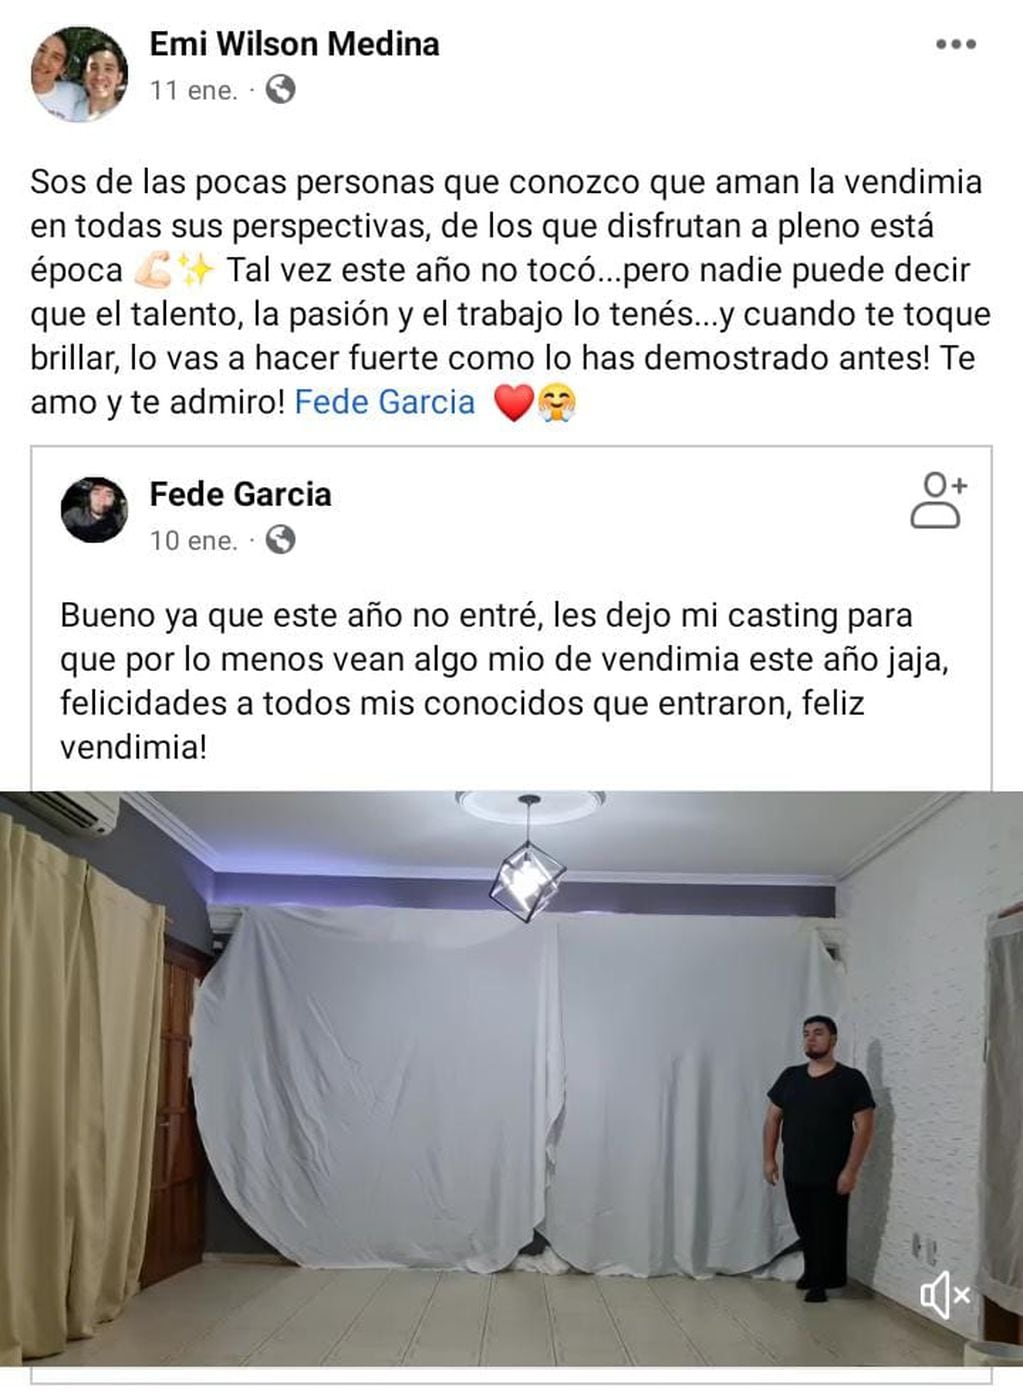 Publicación del bailarín Emiliano Medina a su novio bailarín.